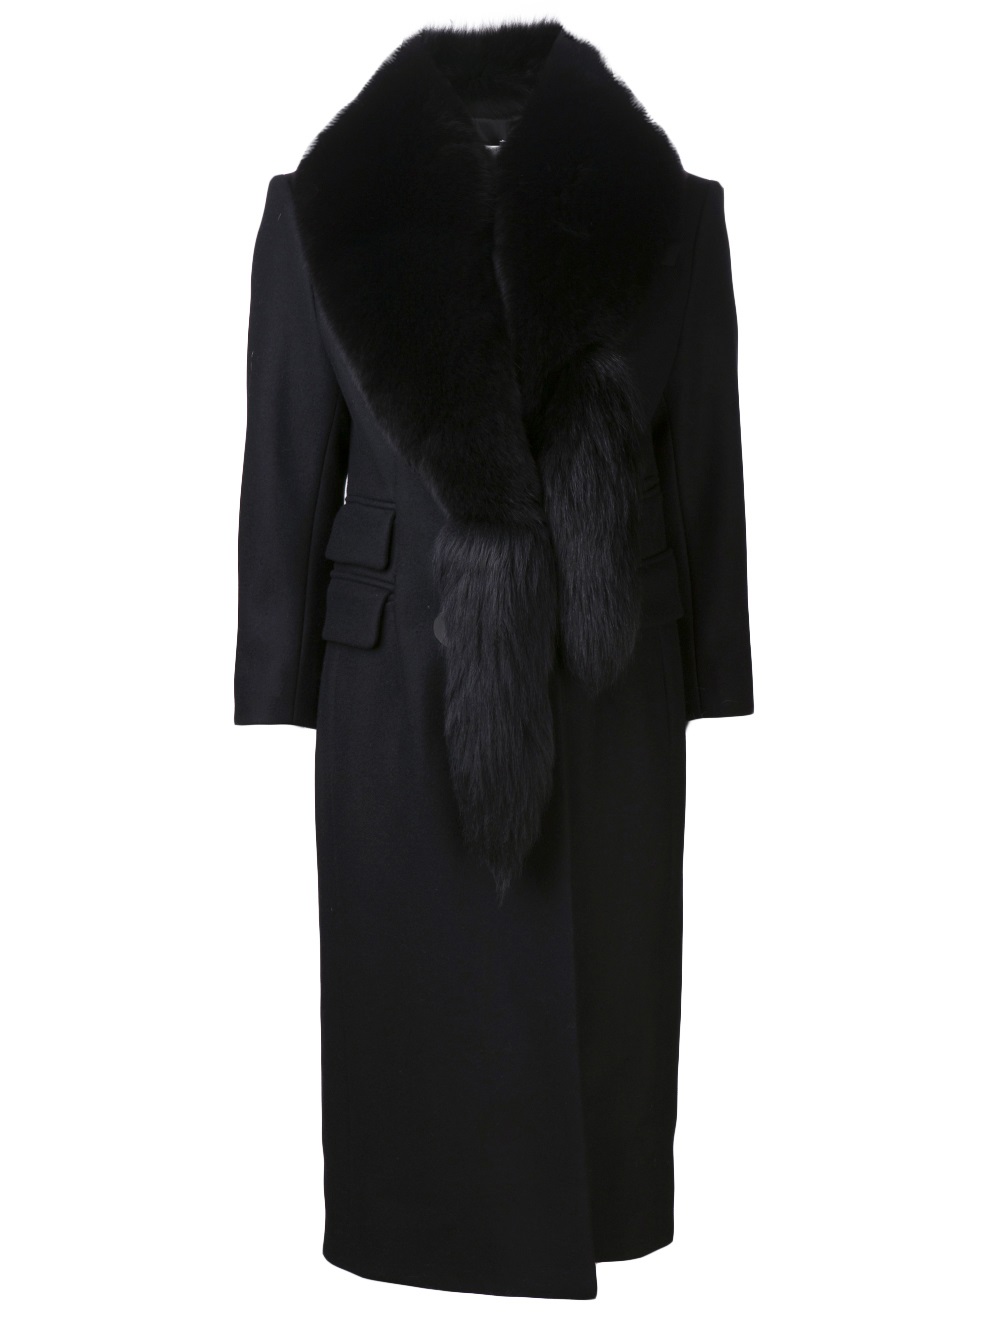 Lyst - Altuzarra Lara Coat in Black